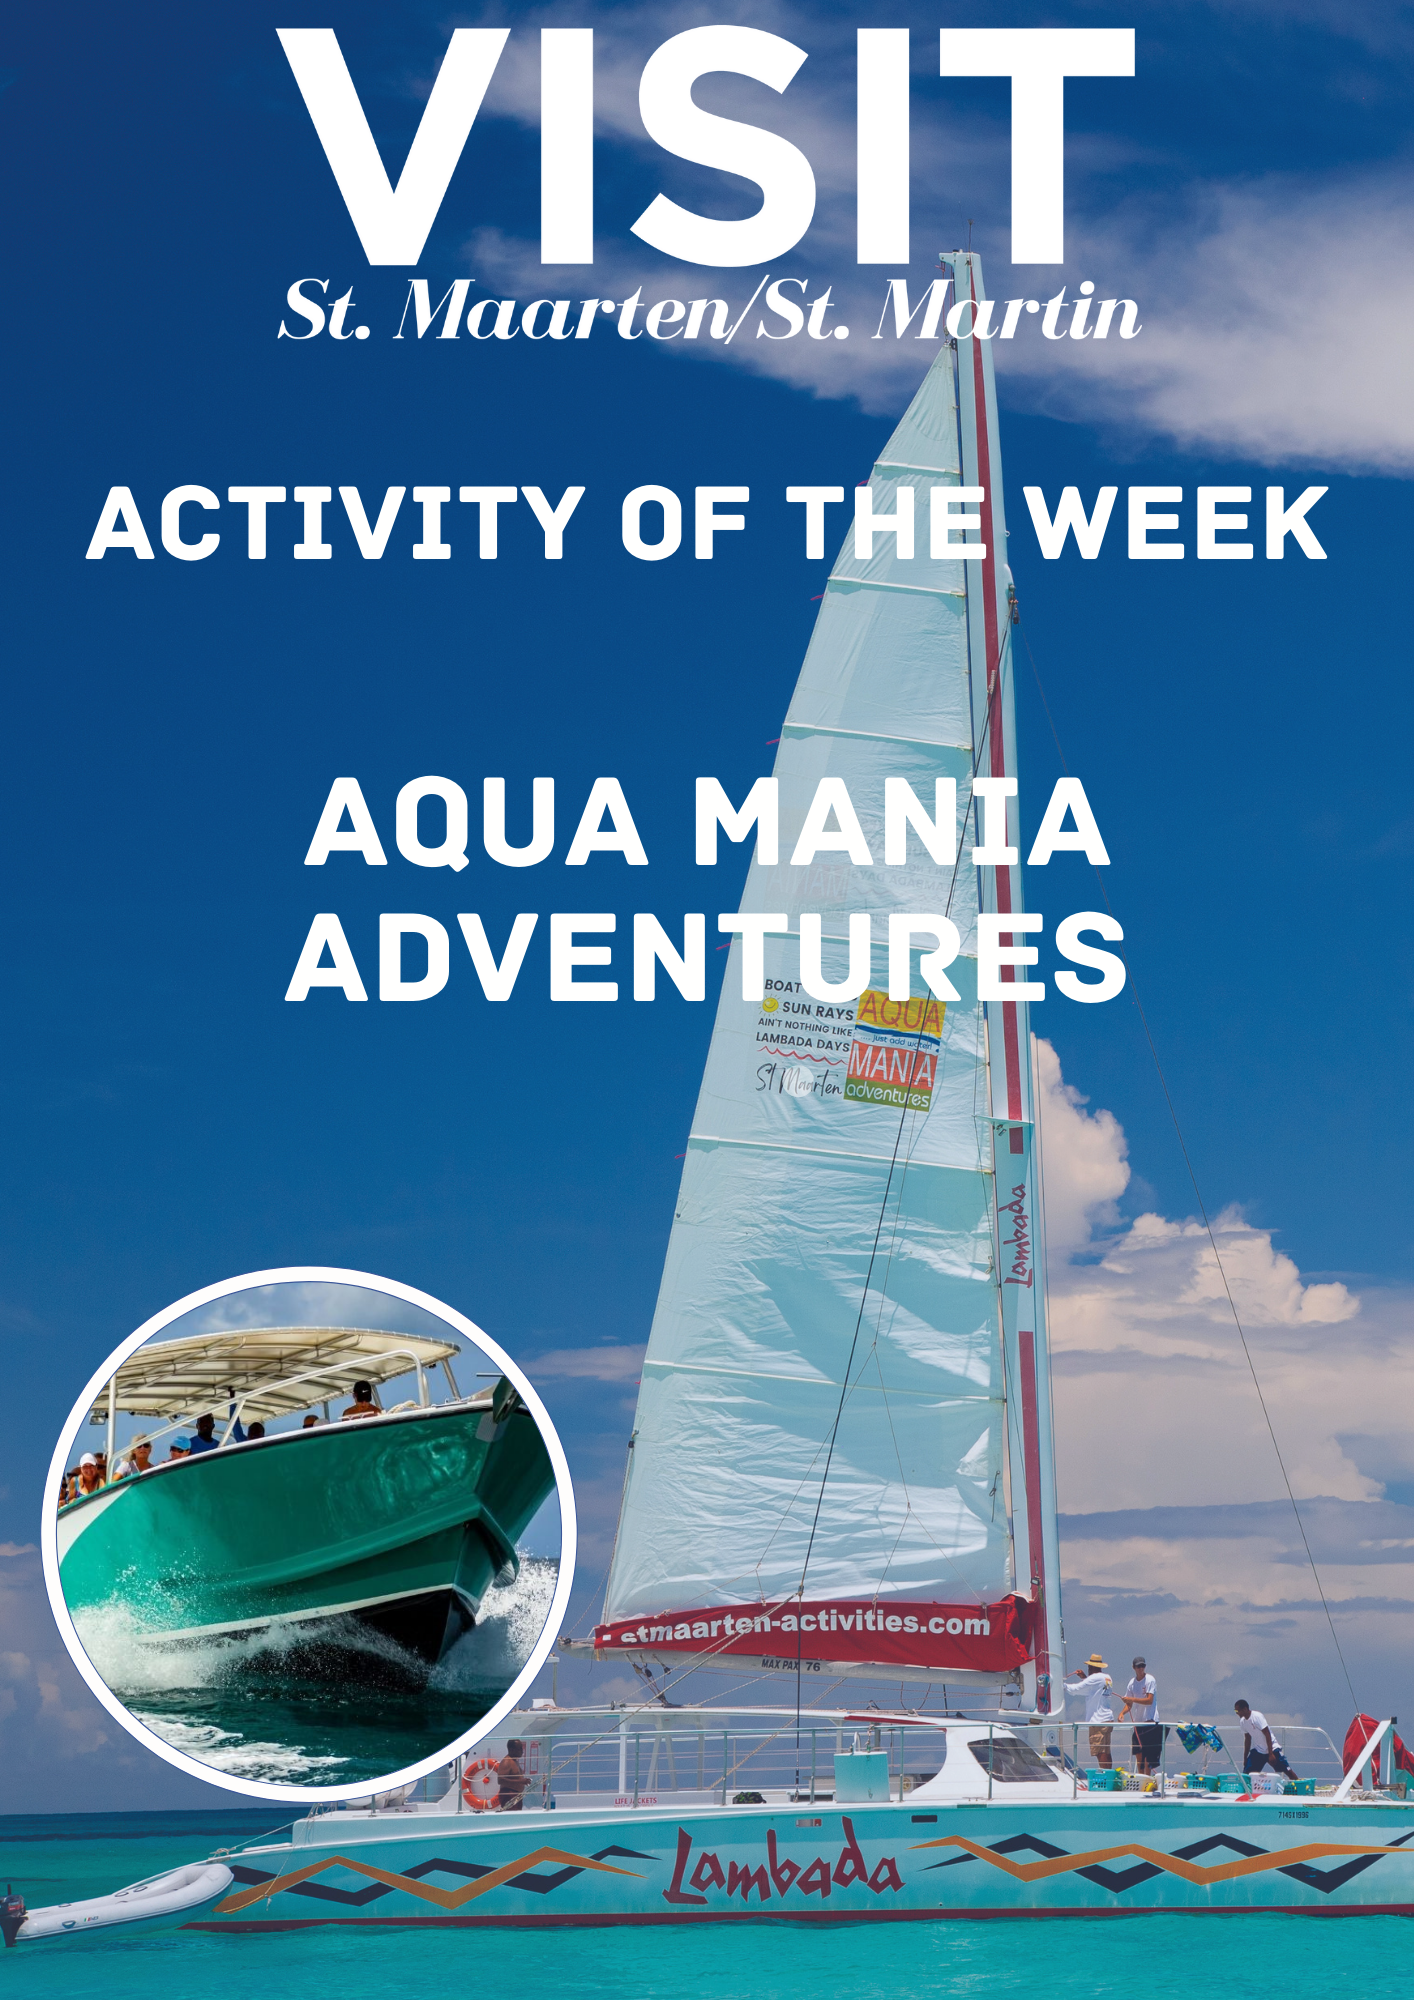 Aqua Mania Adventures catamarans / boats st. maarten